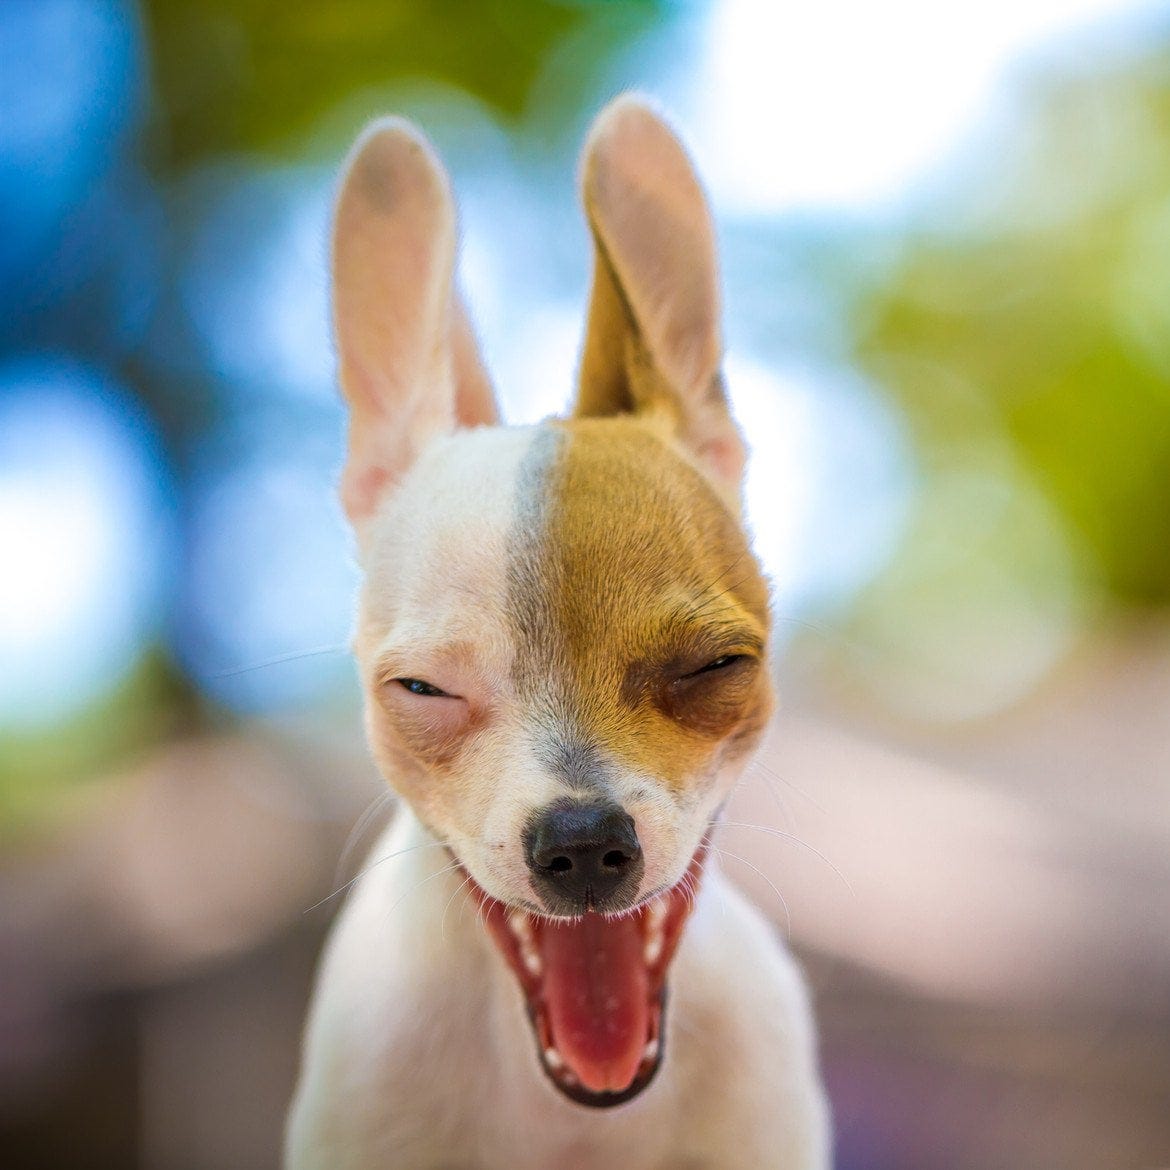 Dog making funny face : photoshopbattles